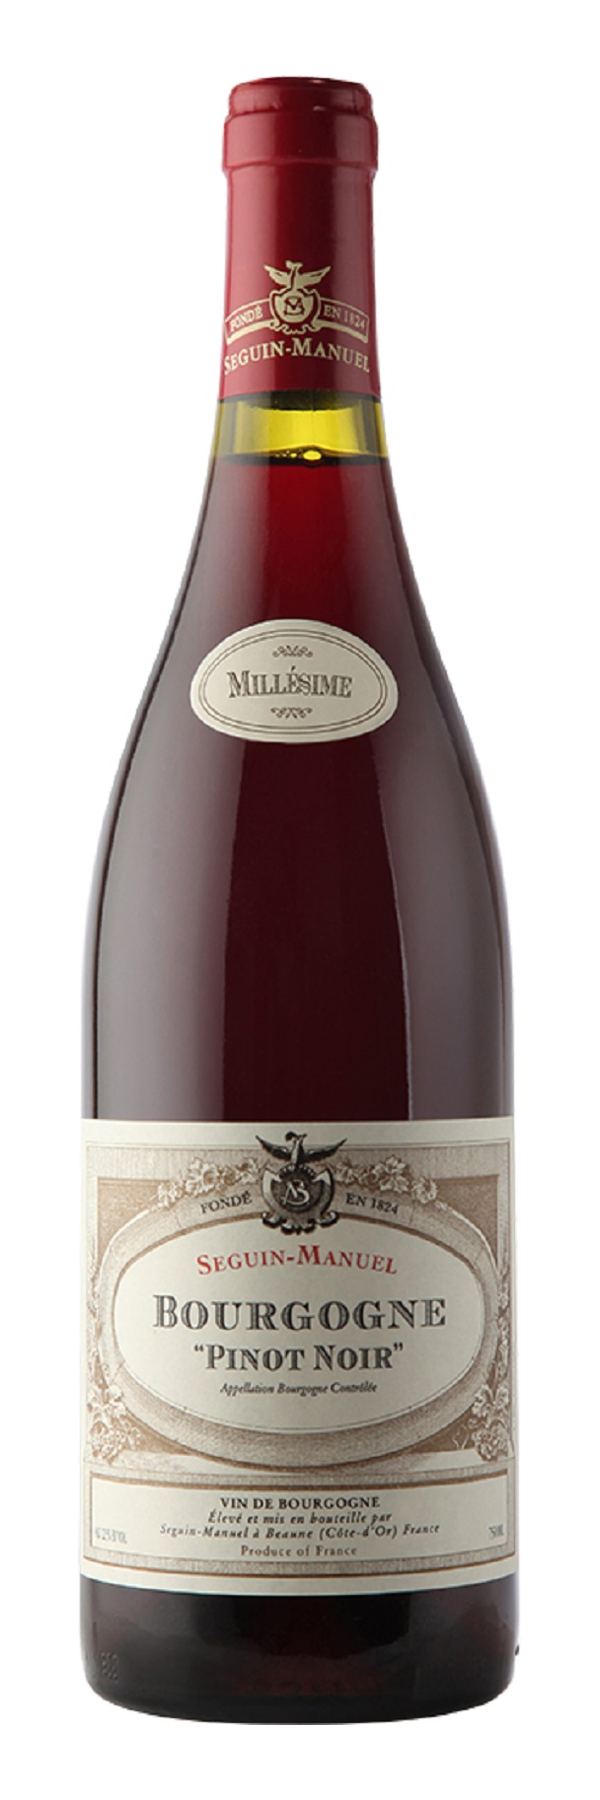 Seguin-Manuel Bourgogne Pinot Noir 2020 0,75l | LAKAAF.DE Wein Shop